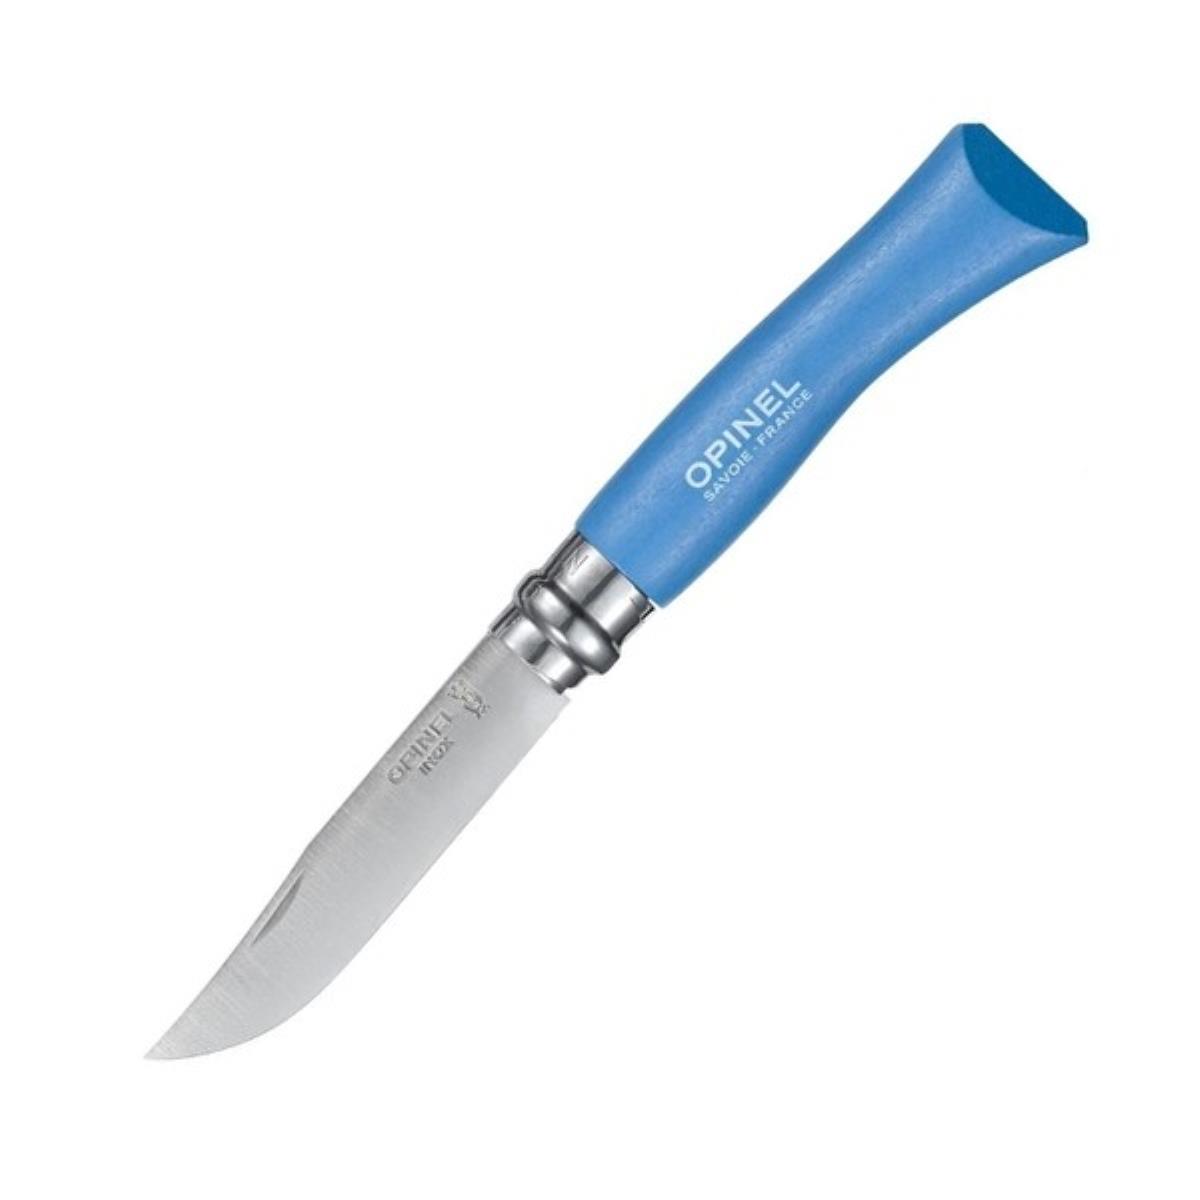 Нож №7 VRI Colored Tradition Sky blue нерж. сталь, рукоять граб, длина клинка8см (голубой) OPINEL доска разделочная для подачи с ручкой adelica 38×16×2 см темный граб